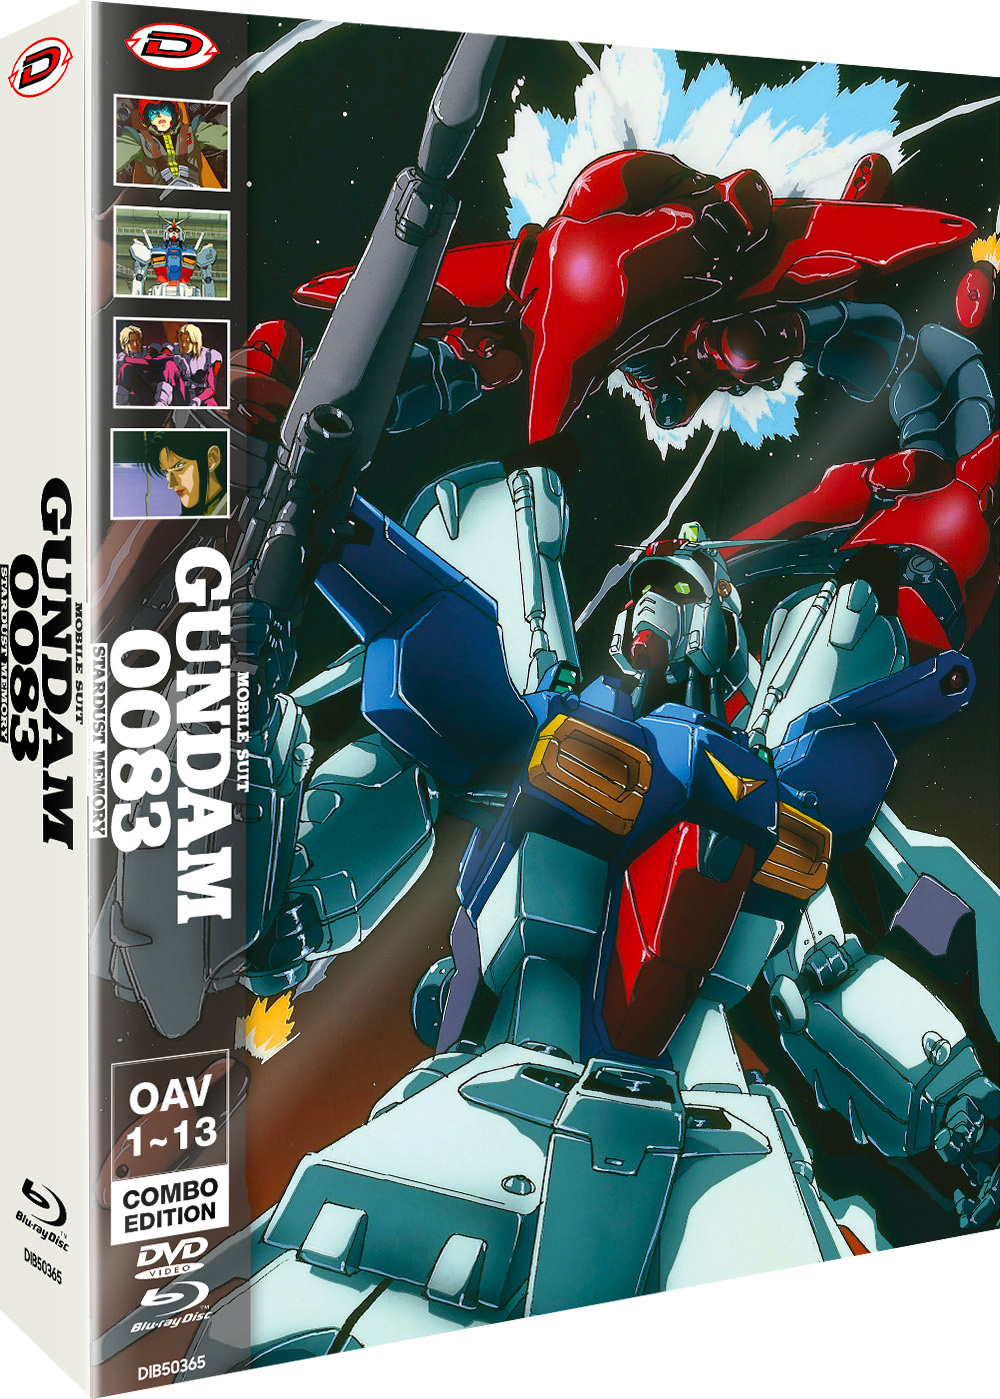 Gundam 0083